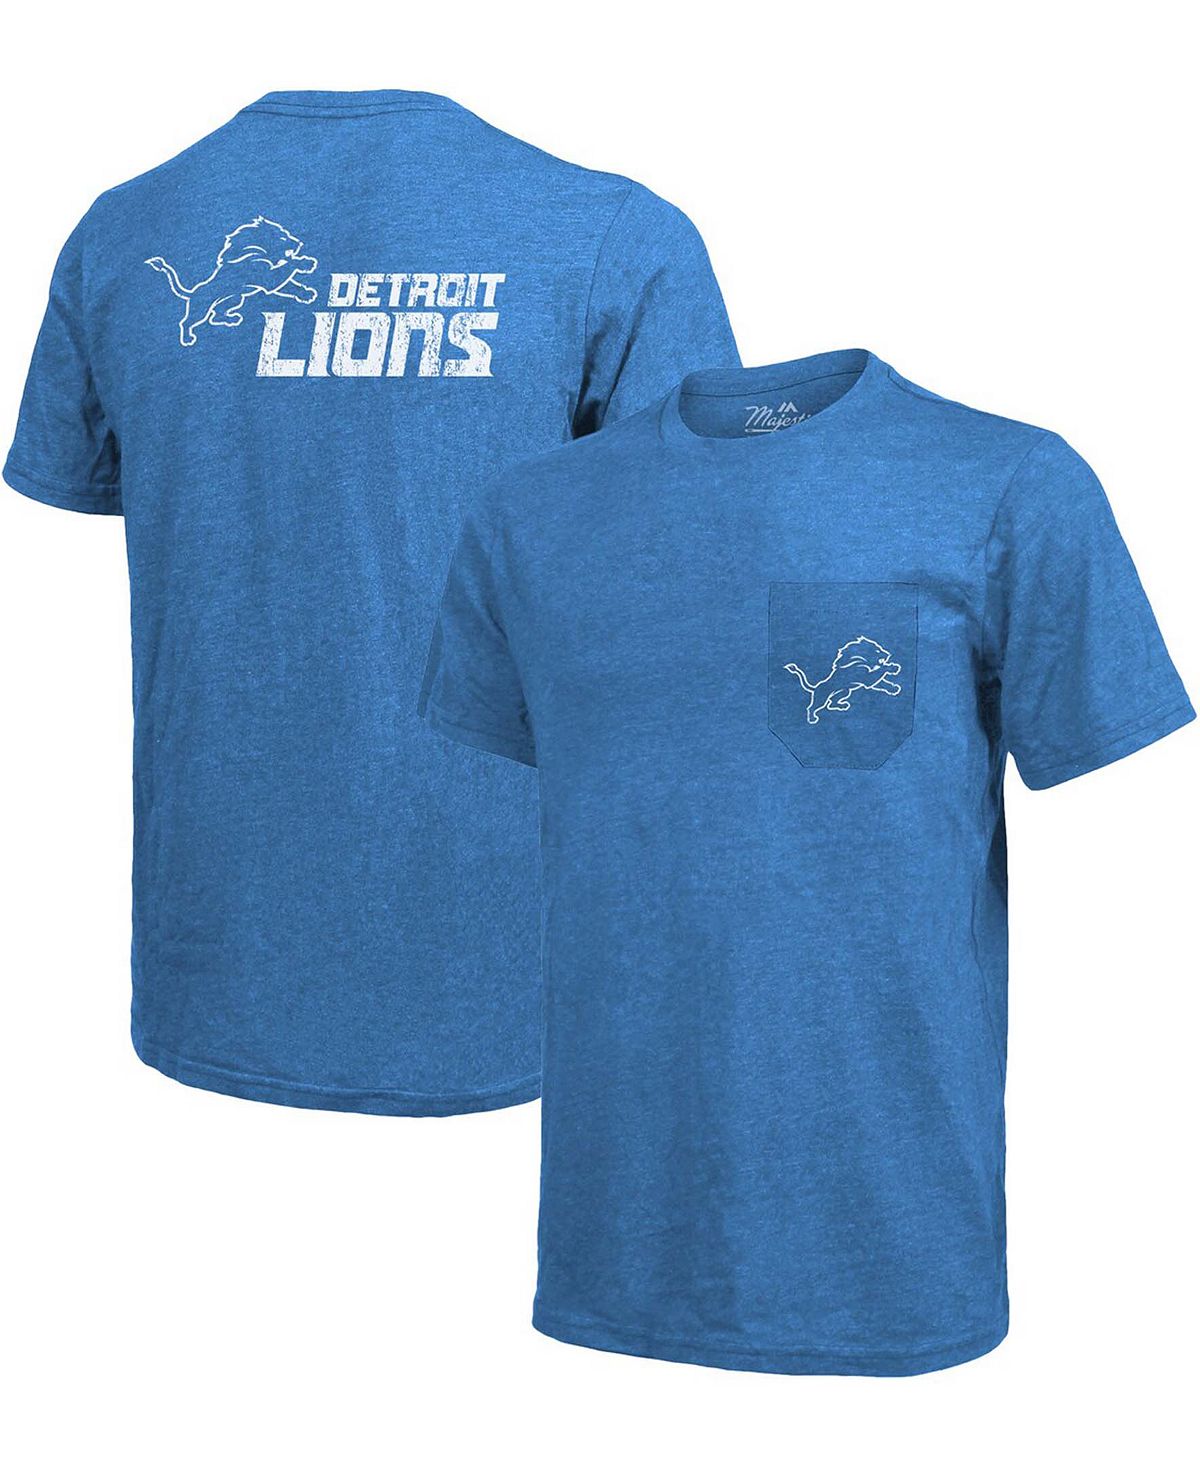 Футболка detroit lions tri-blend pocket - синий Majestic, синий футболка с карманами tri blend threads detroit lions синяя majestic